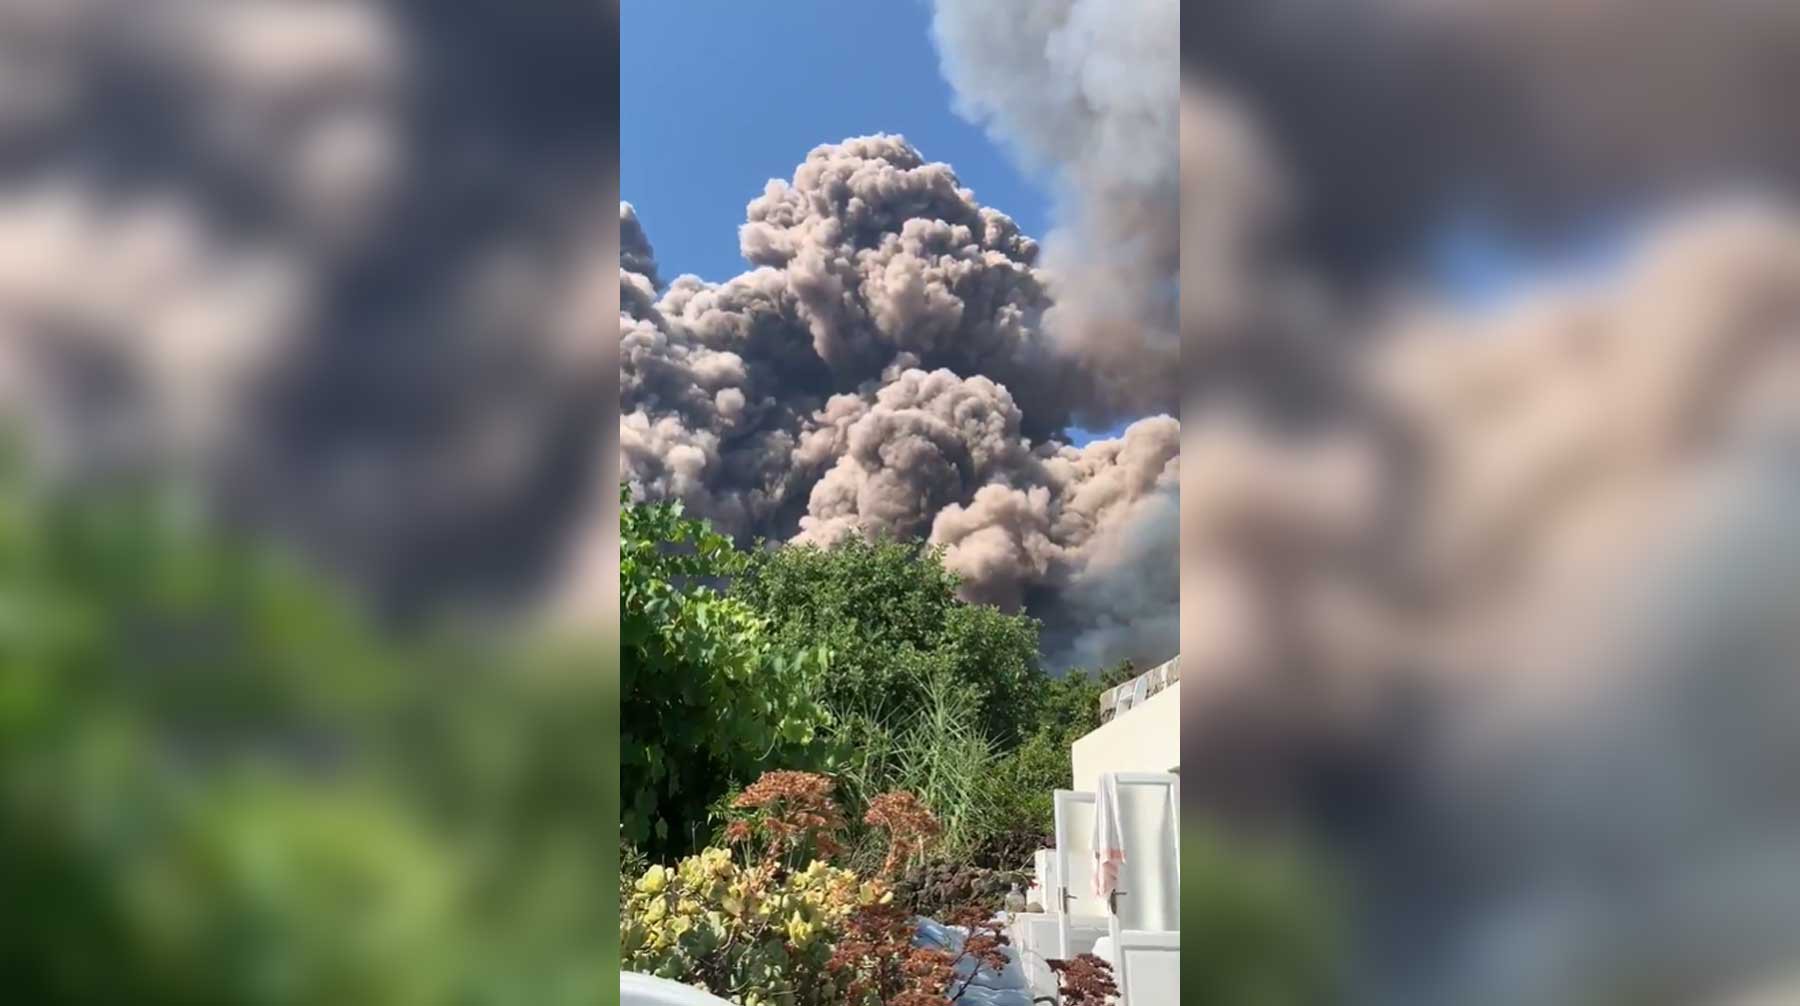 Dailystorm - Извержение вулкана на итальянском острове: один турист погиб, еще один пострадал